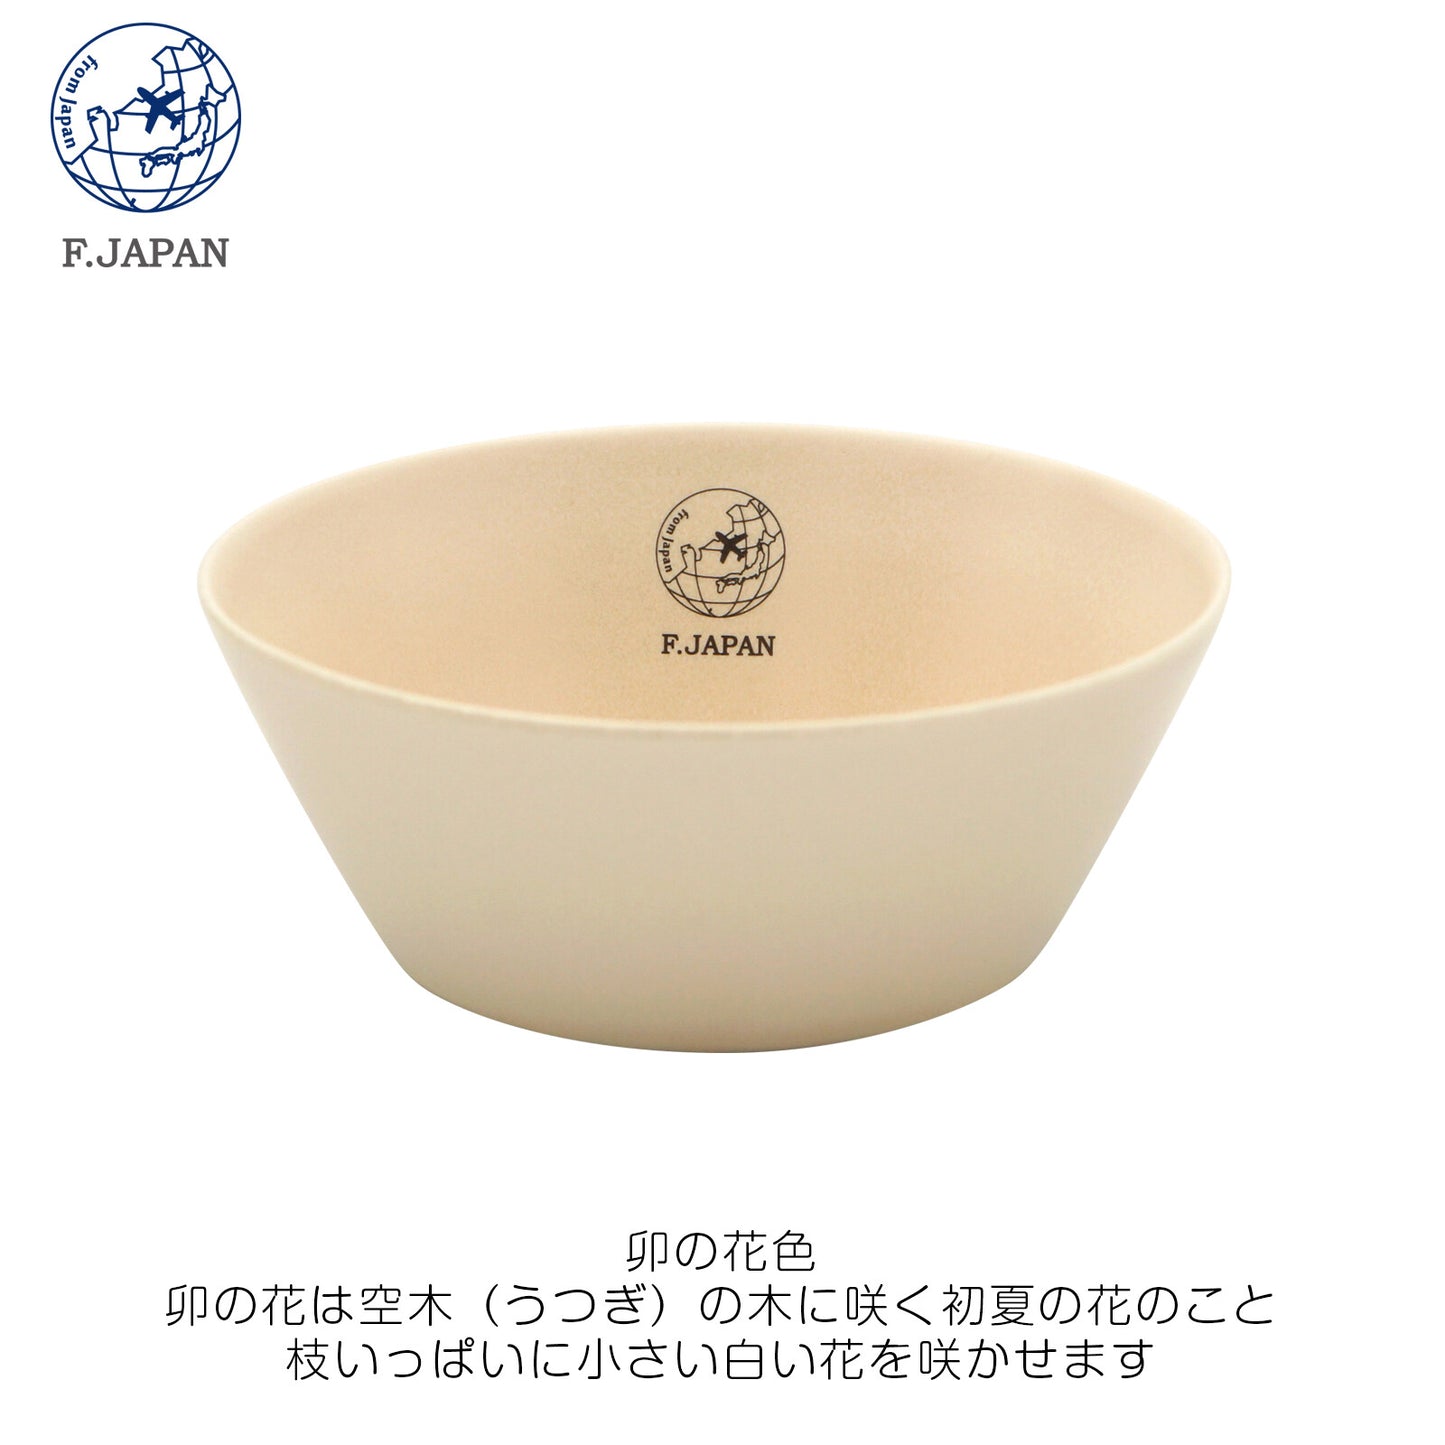 F.JAPAN Mino Yaki and Color Big Bowl